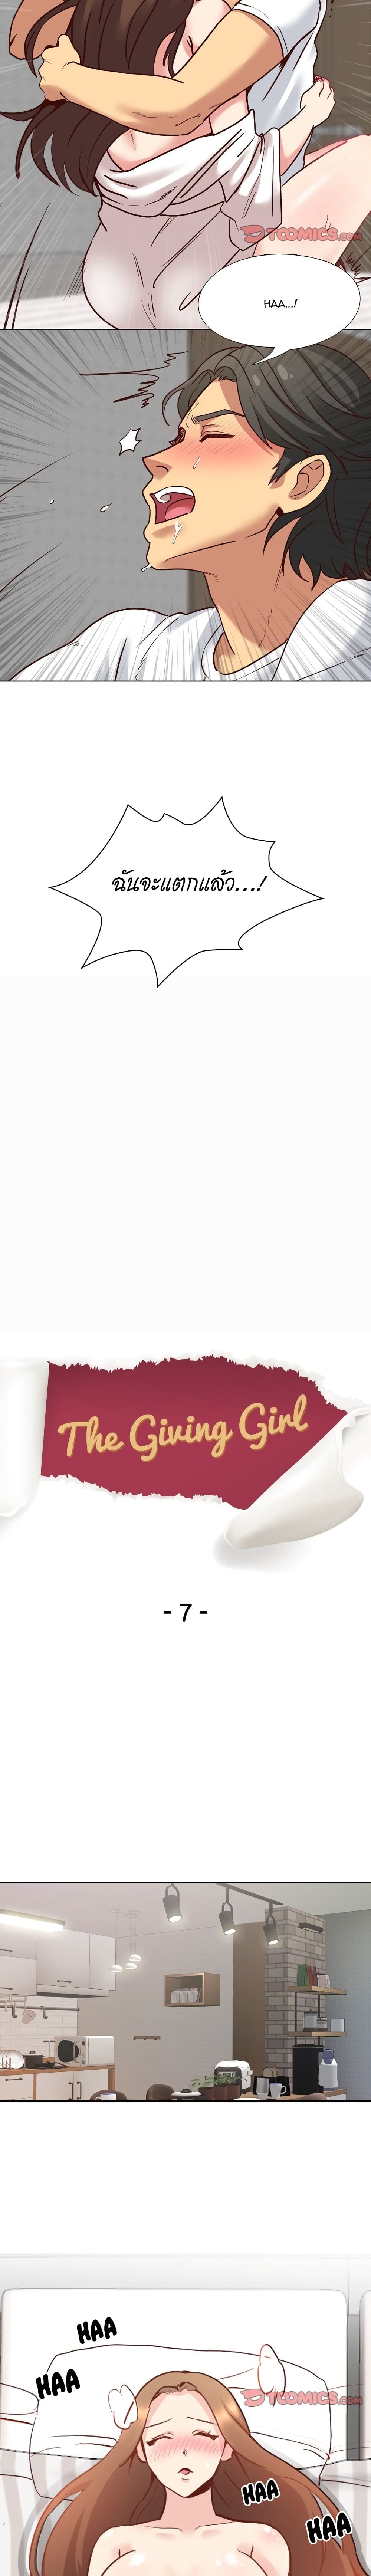 Giving Girl 7-7